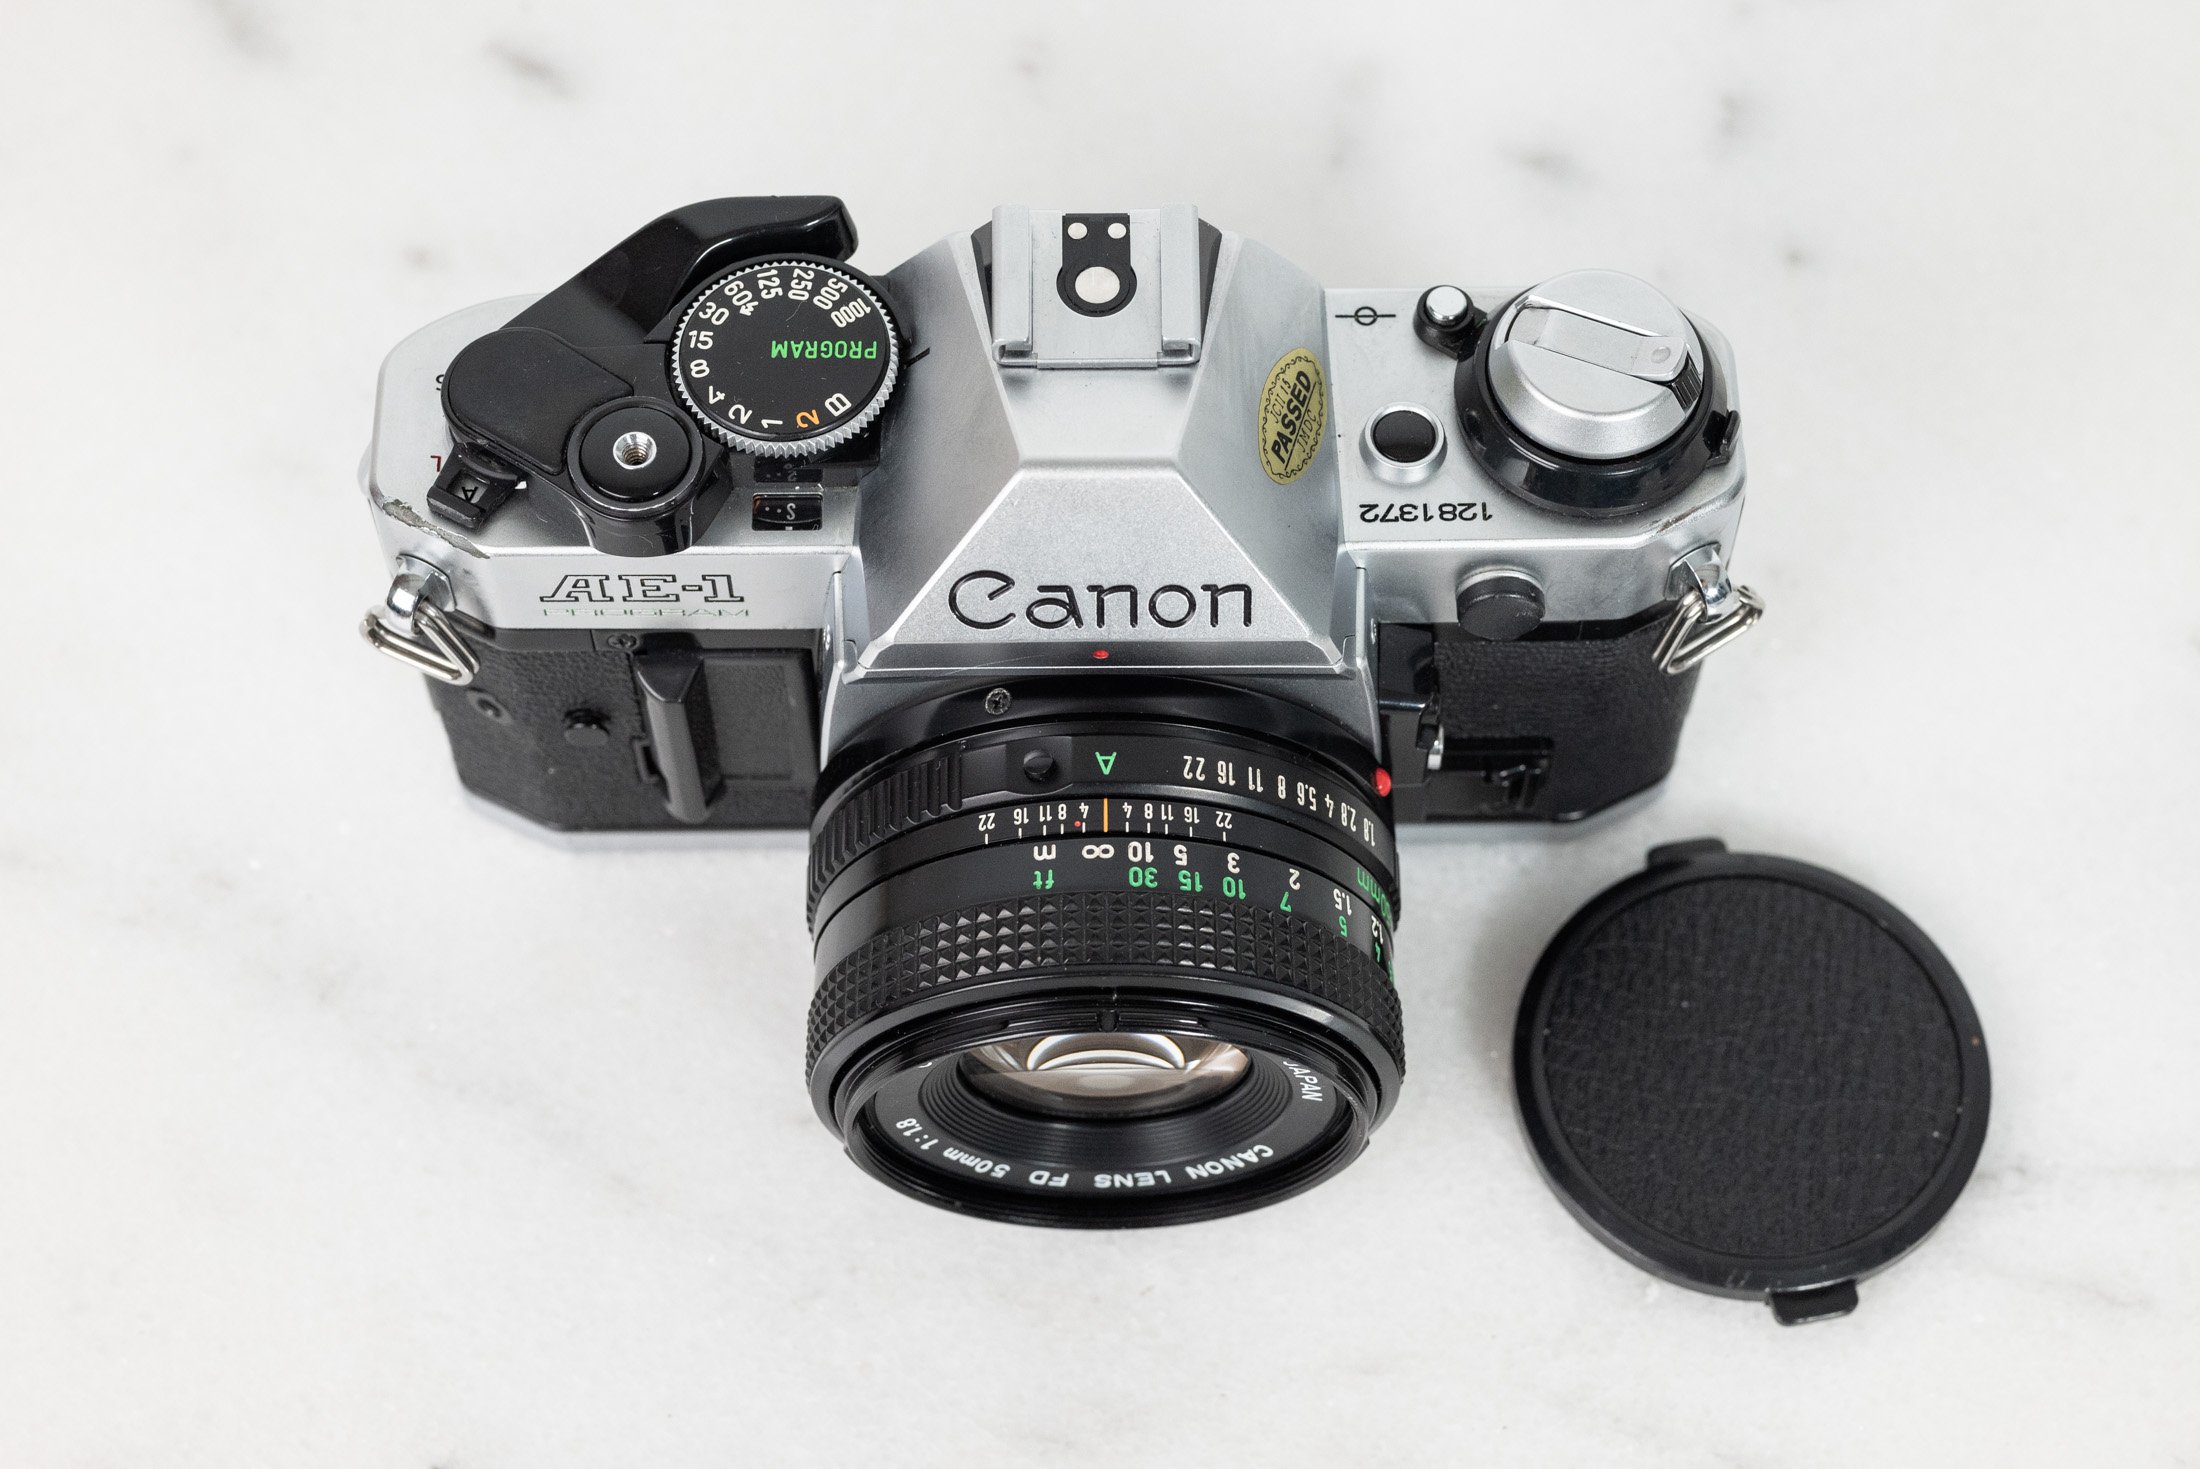 Canon AE-1 Program 35mm Film SLR Camera with Canon FD 50mm F/1.8